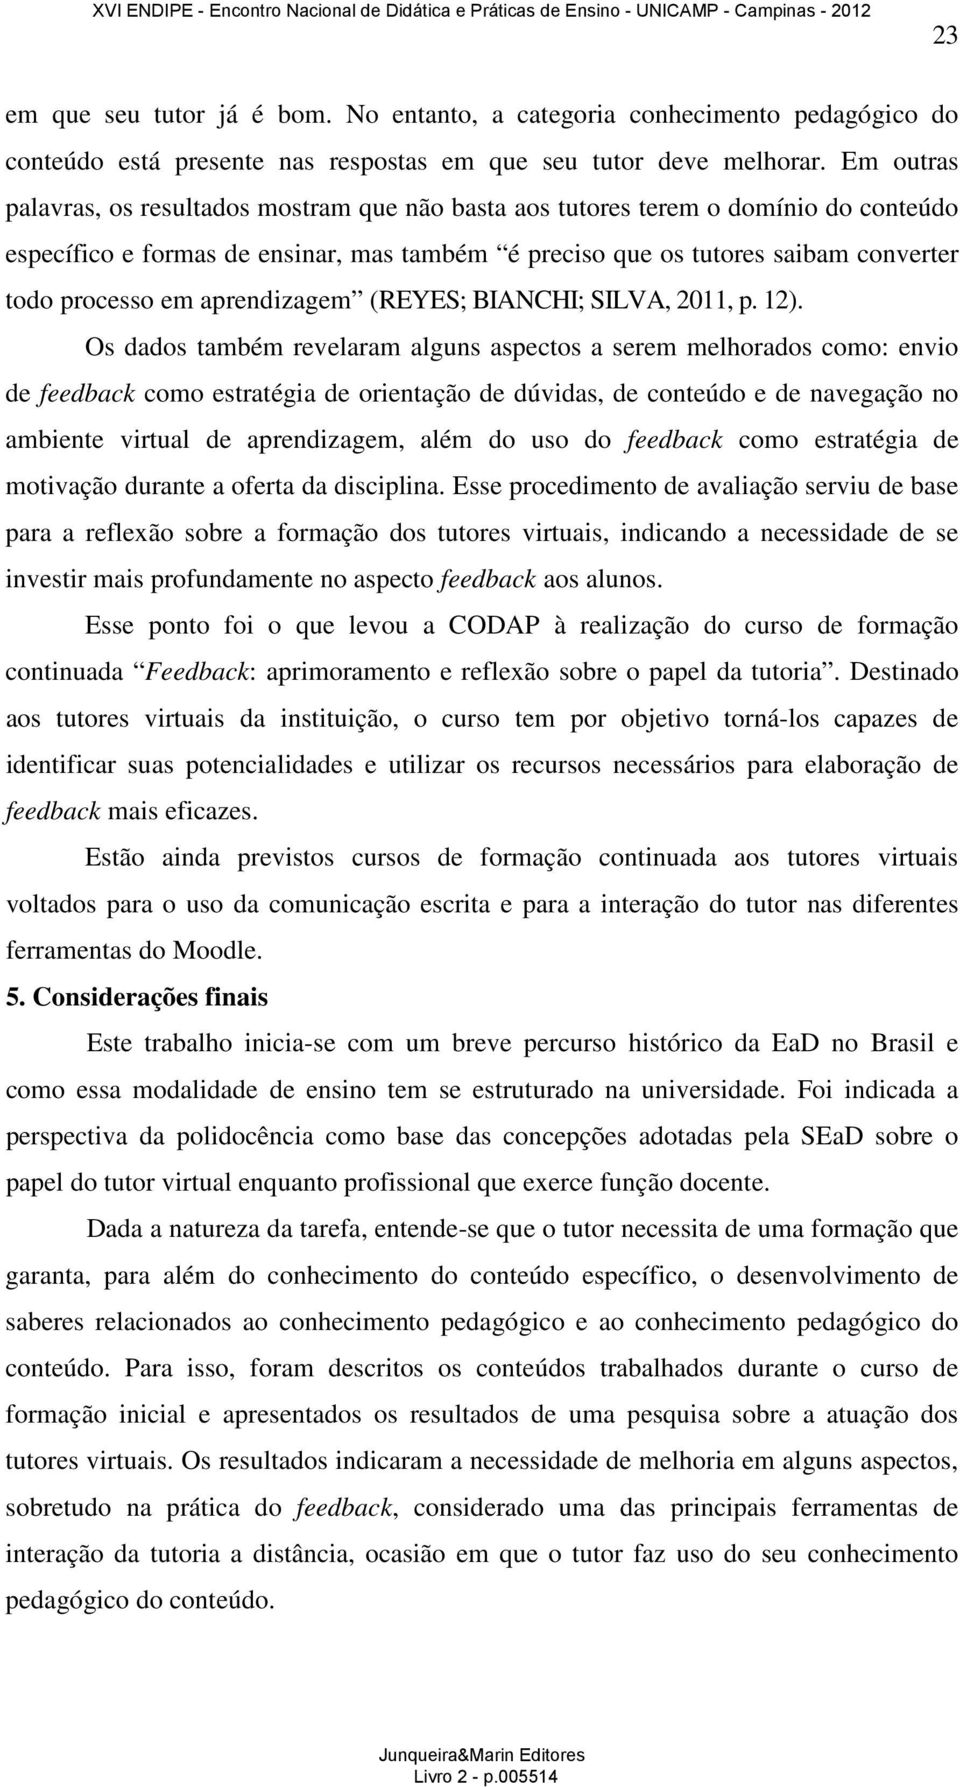 aprendizagem (REYES; BIANCHI; SILVA, 2011, p. 12).